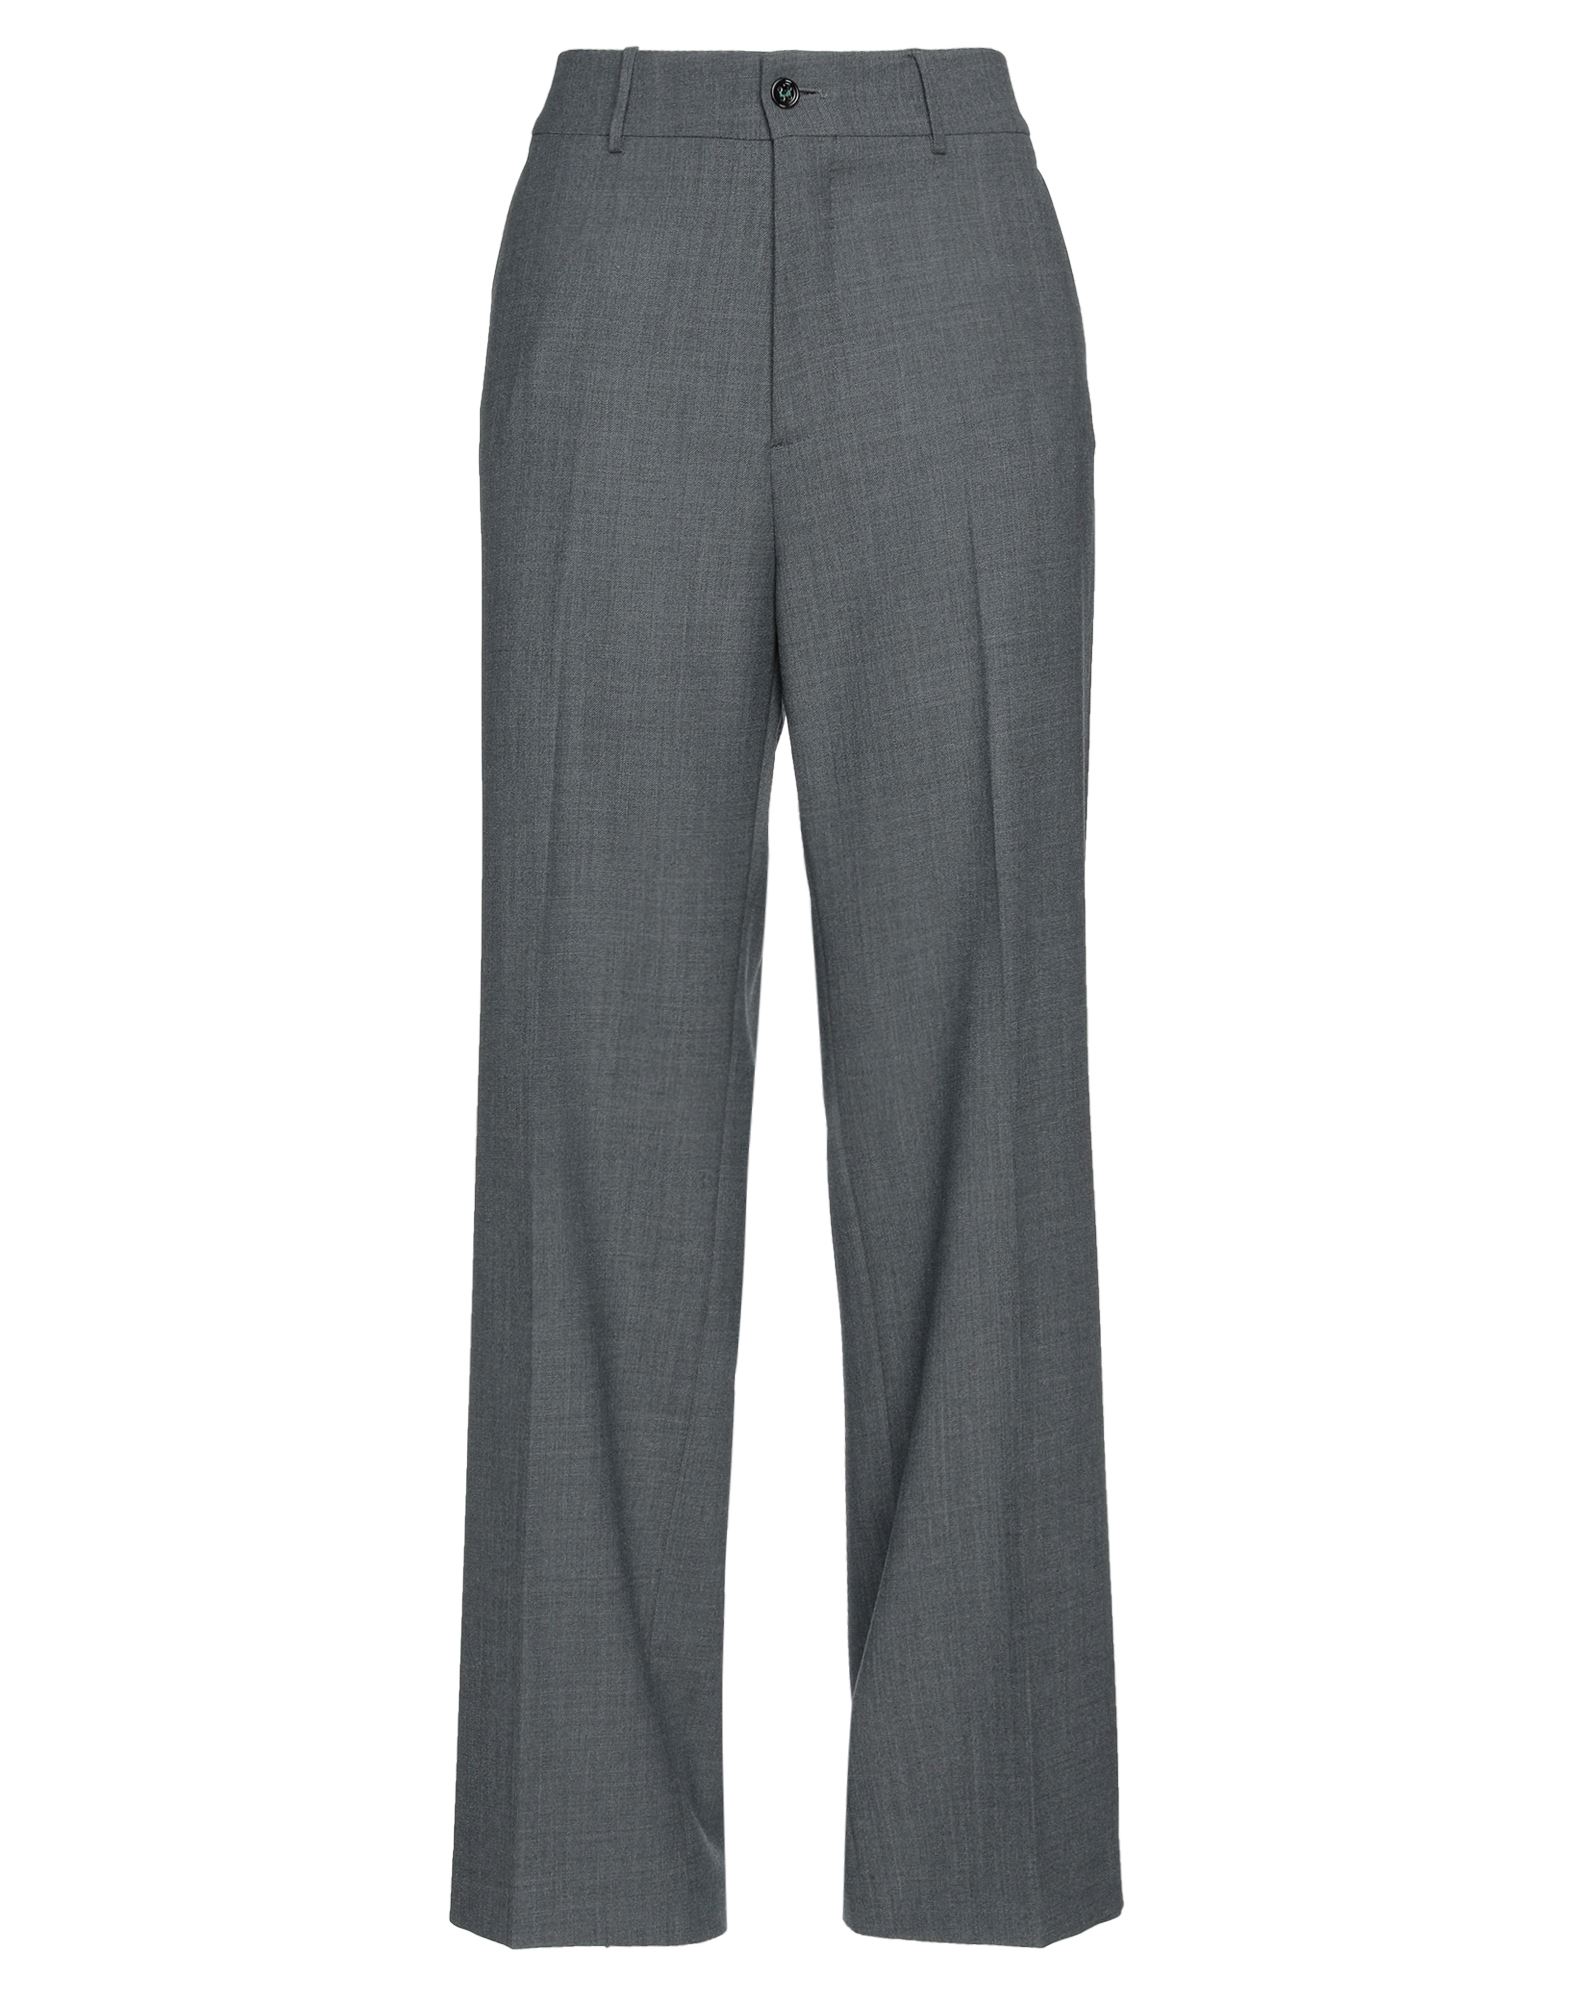 Berwich Pants In Grey